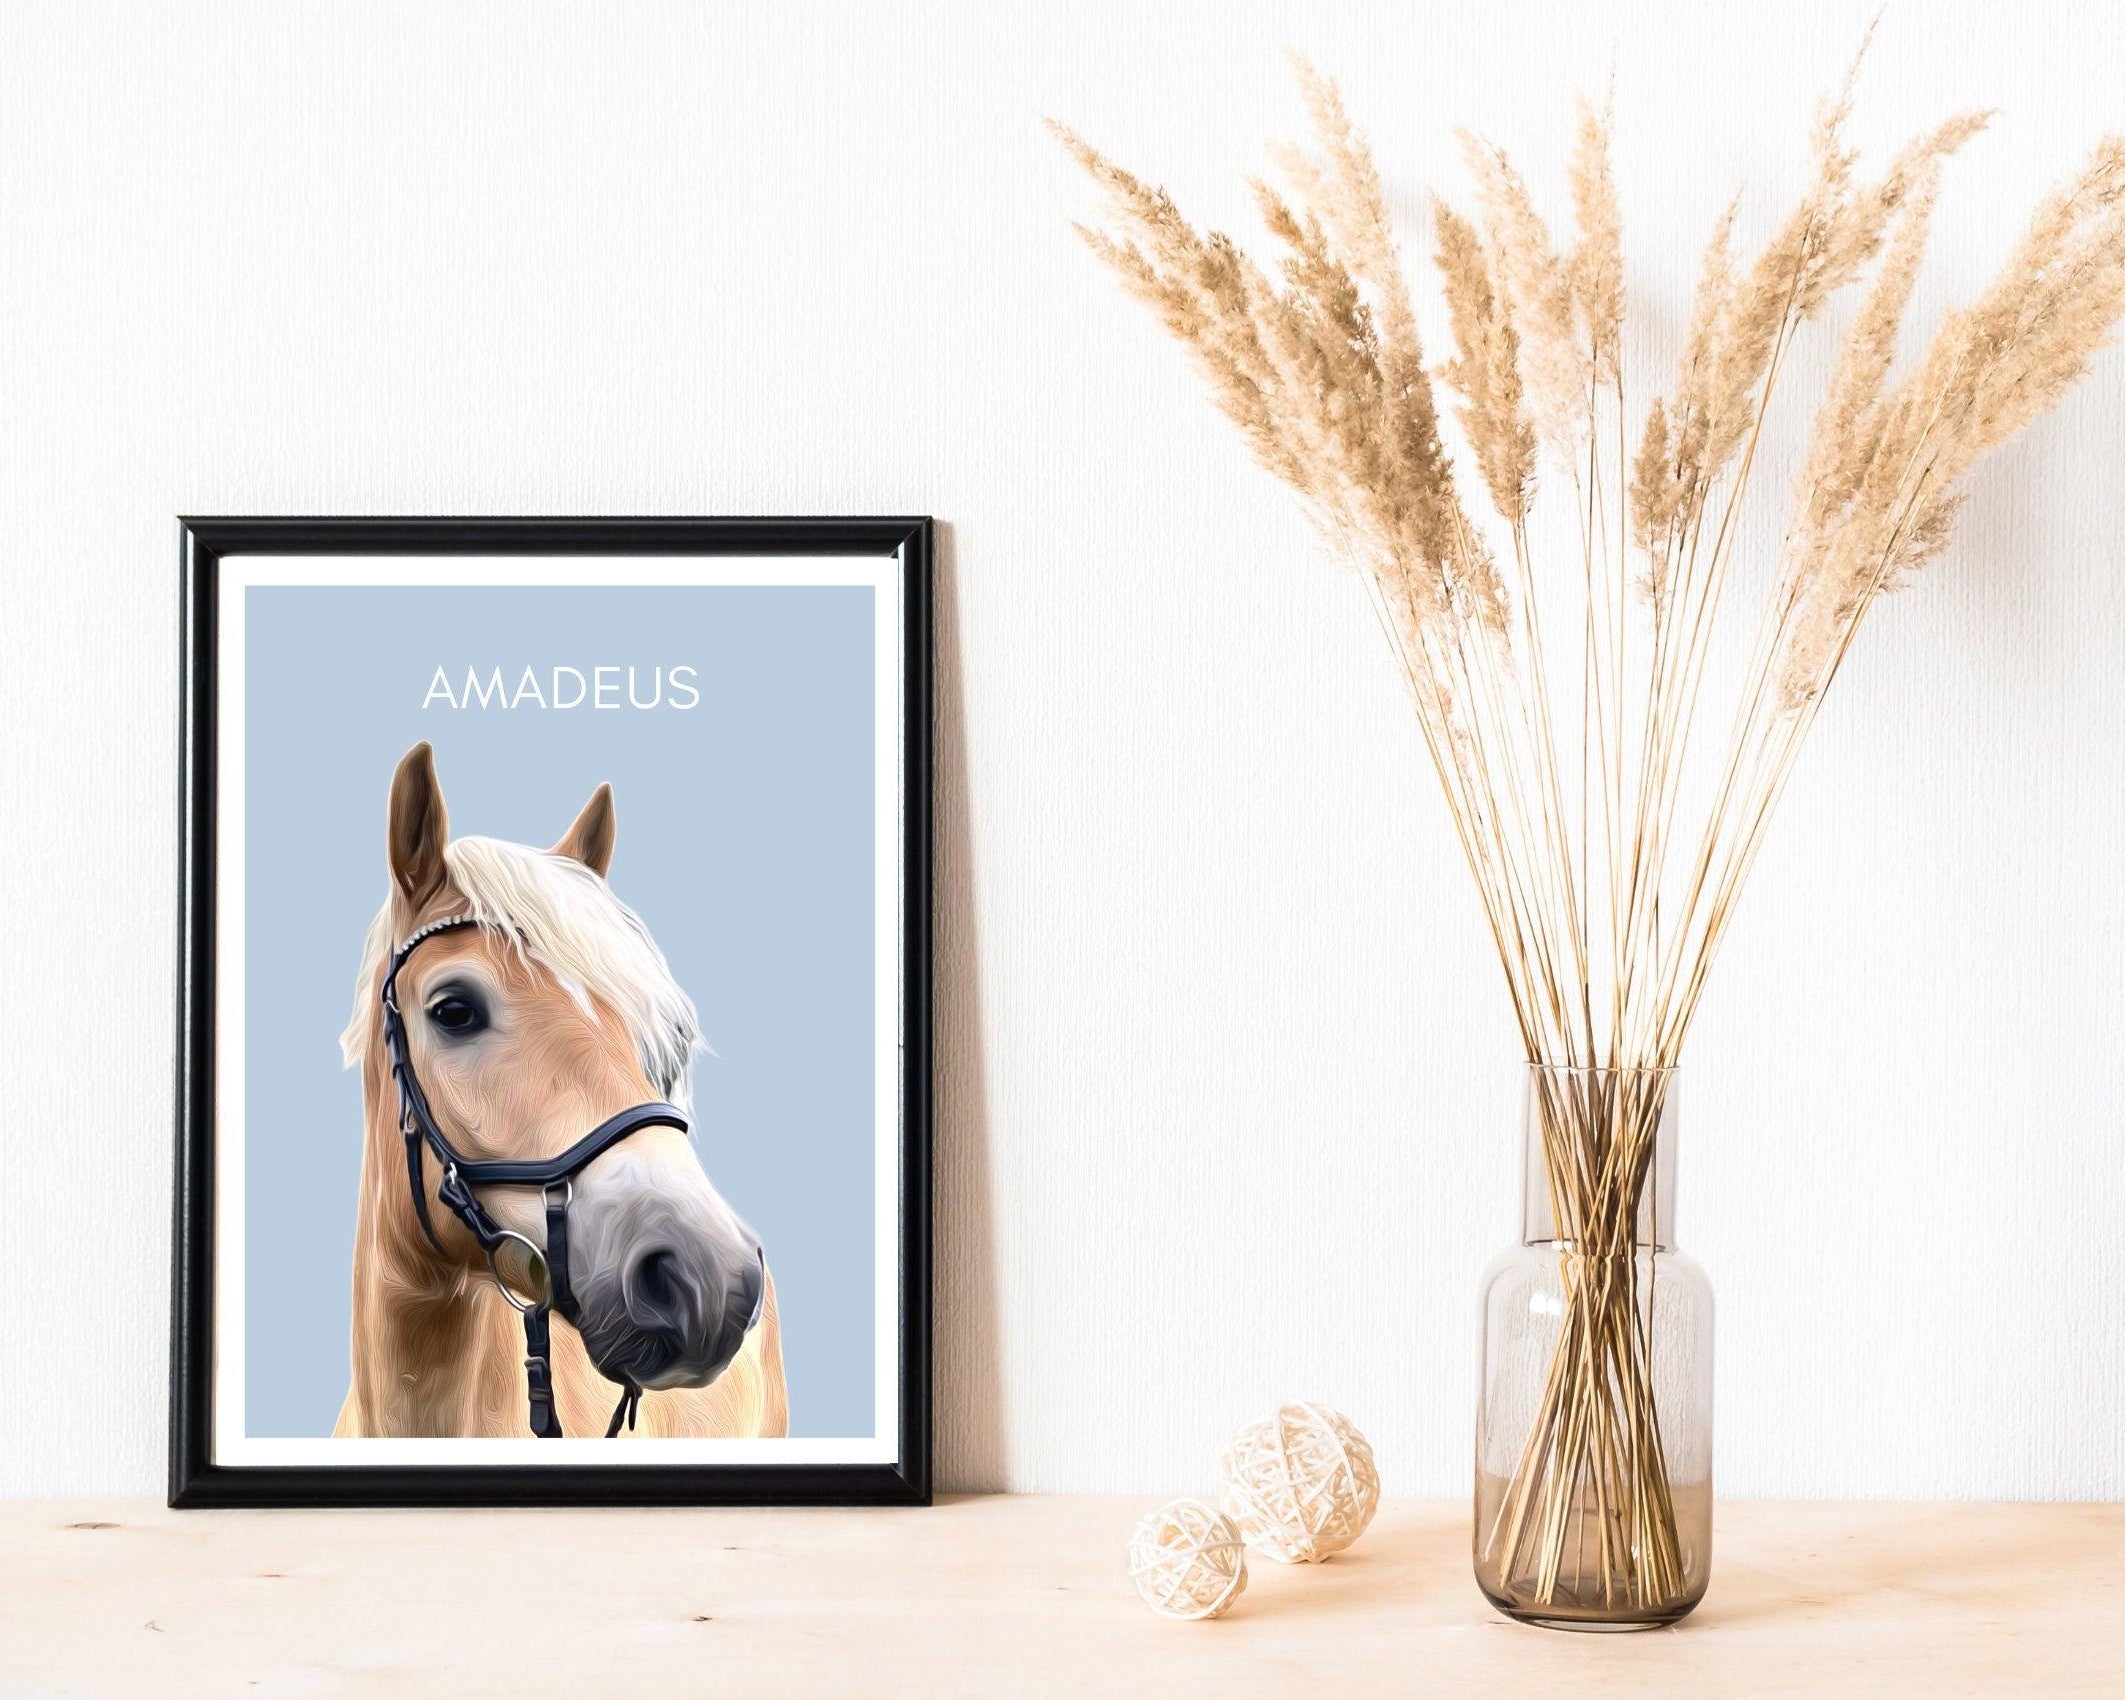 Pferde Portrait | nach Foto mit Namen - Roo's Gift Shop